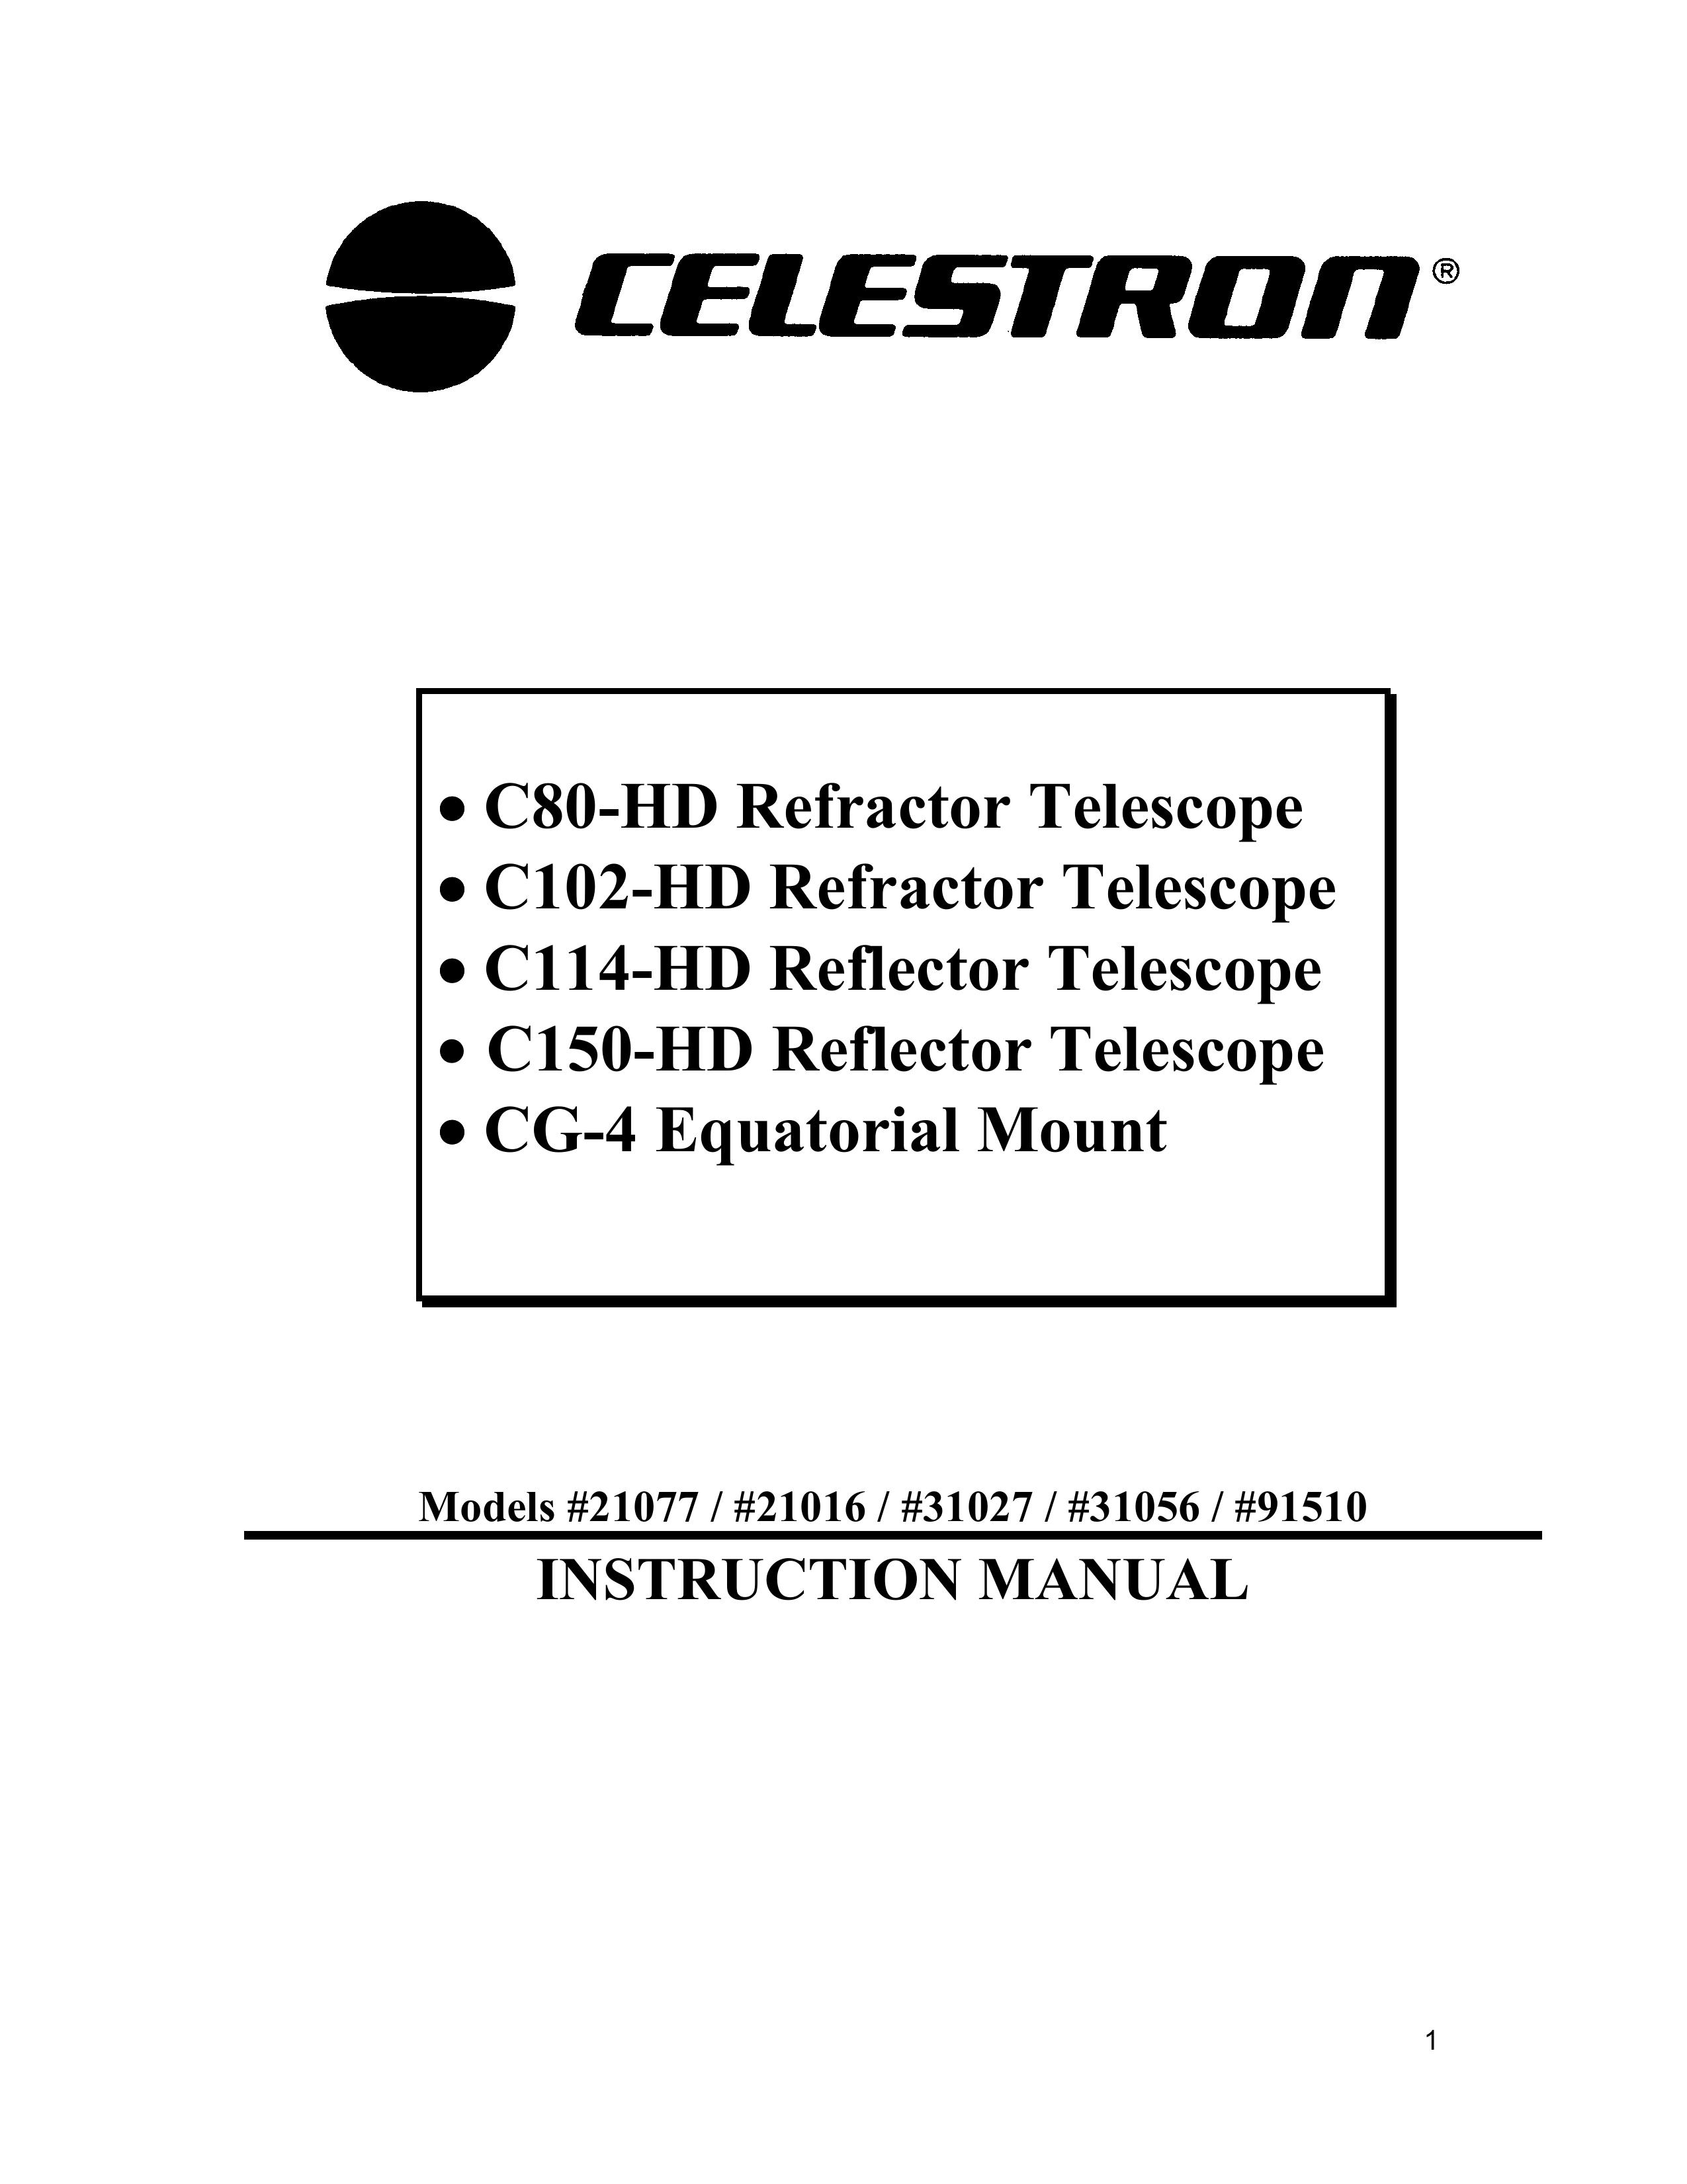 Celestron 21077 Telescope User Manual